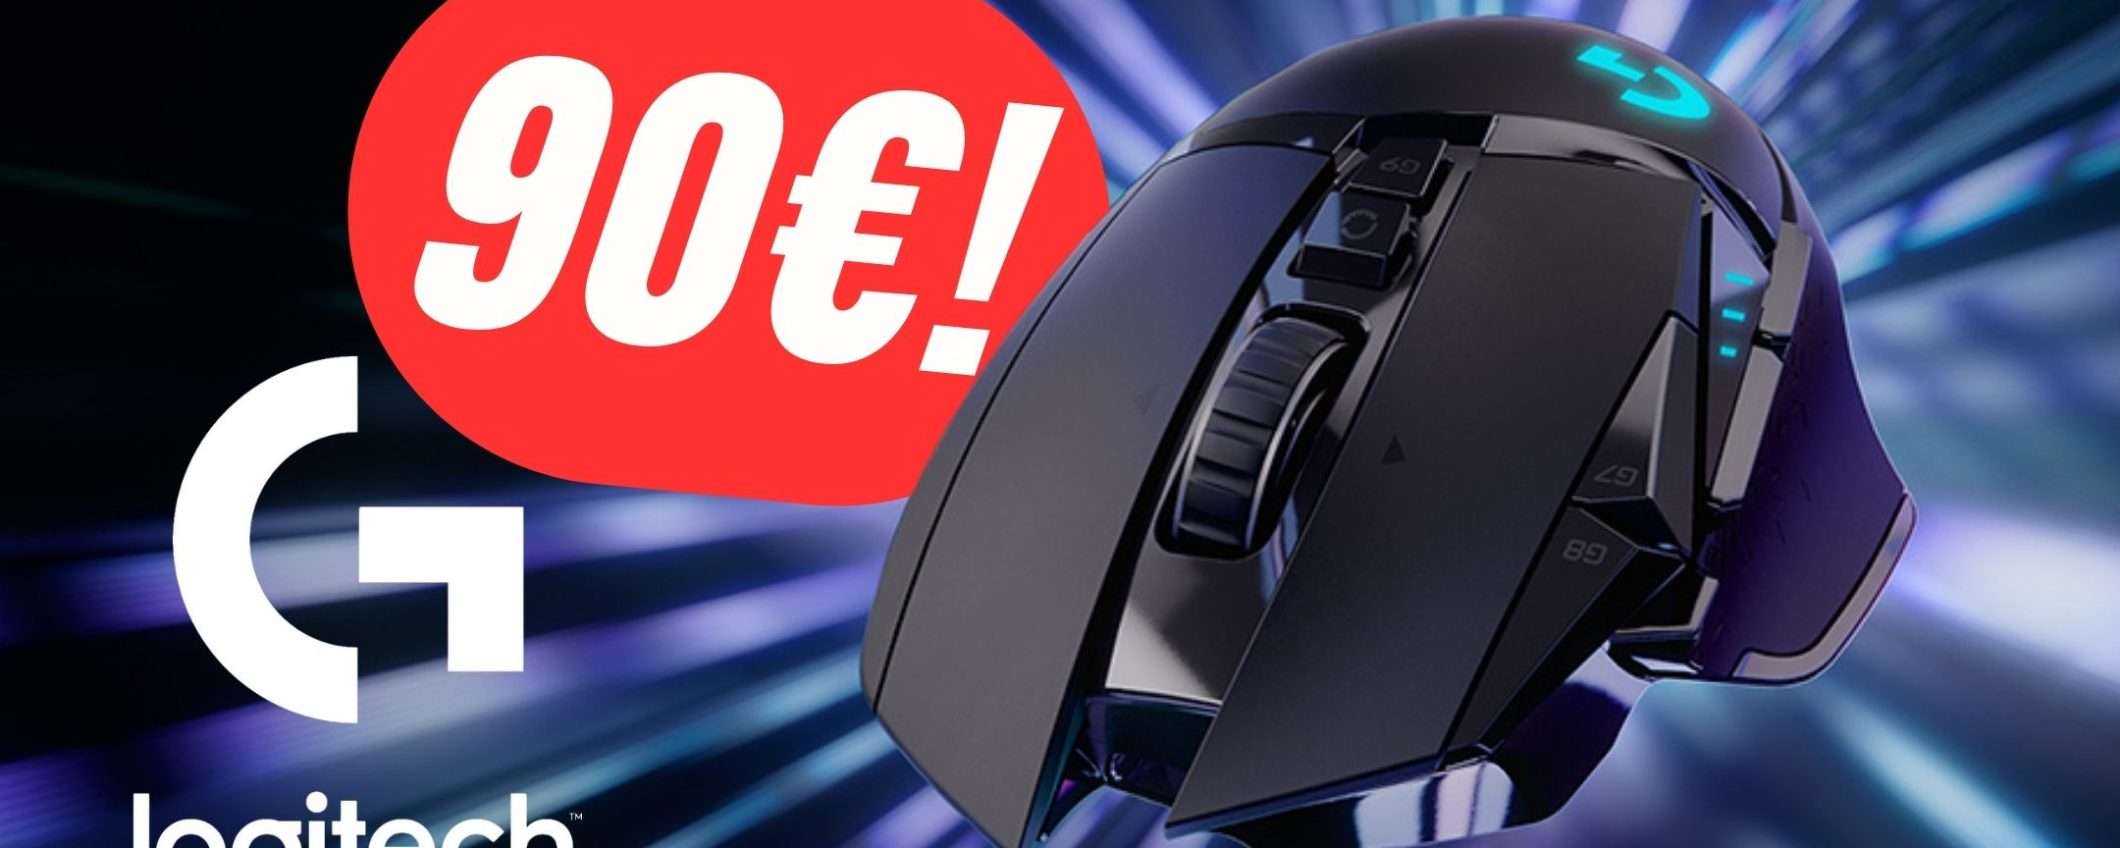 Logitech G502 è il Mouse dei tuoi sogni e costa 90€ ora!